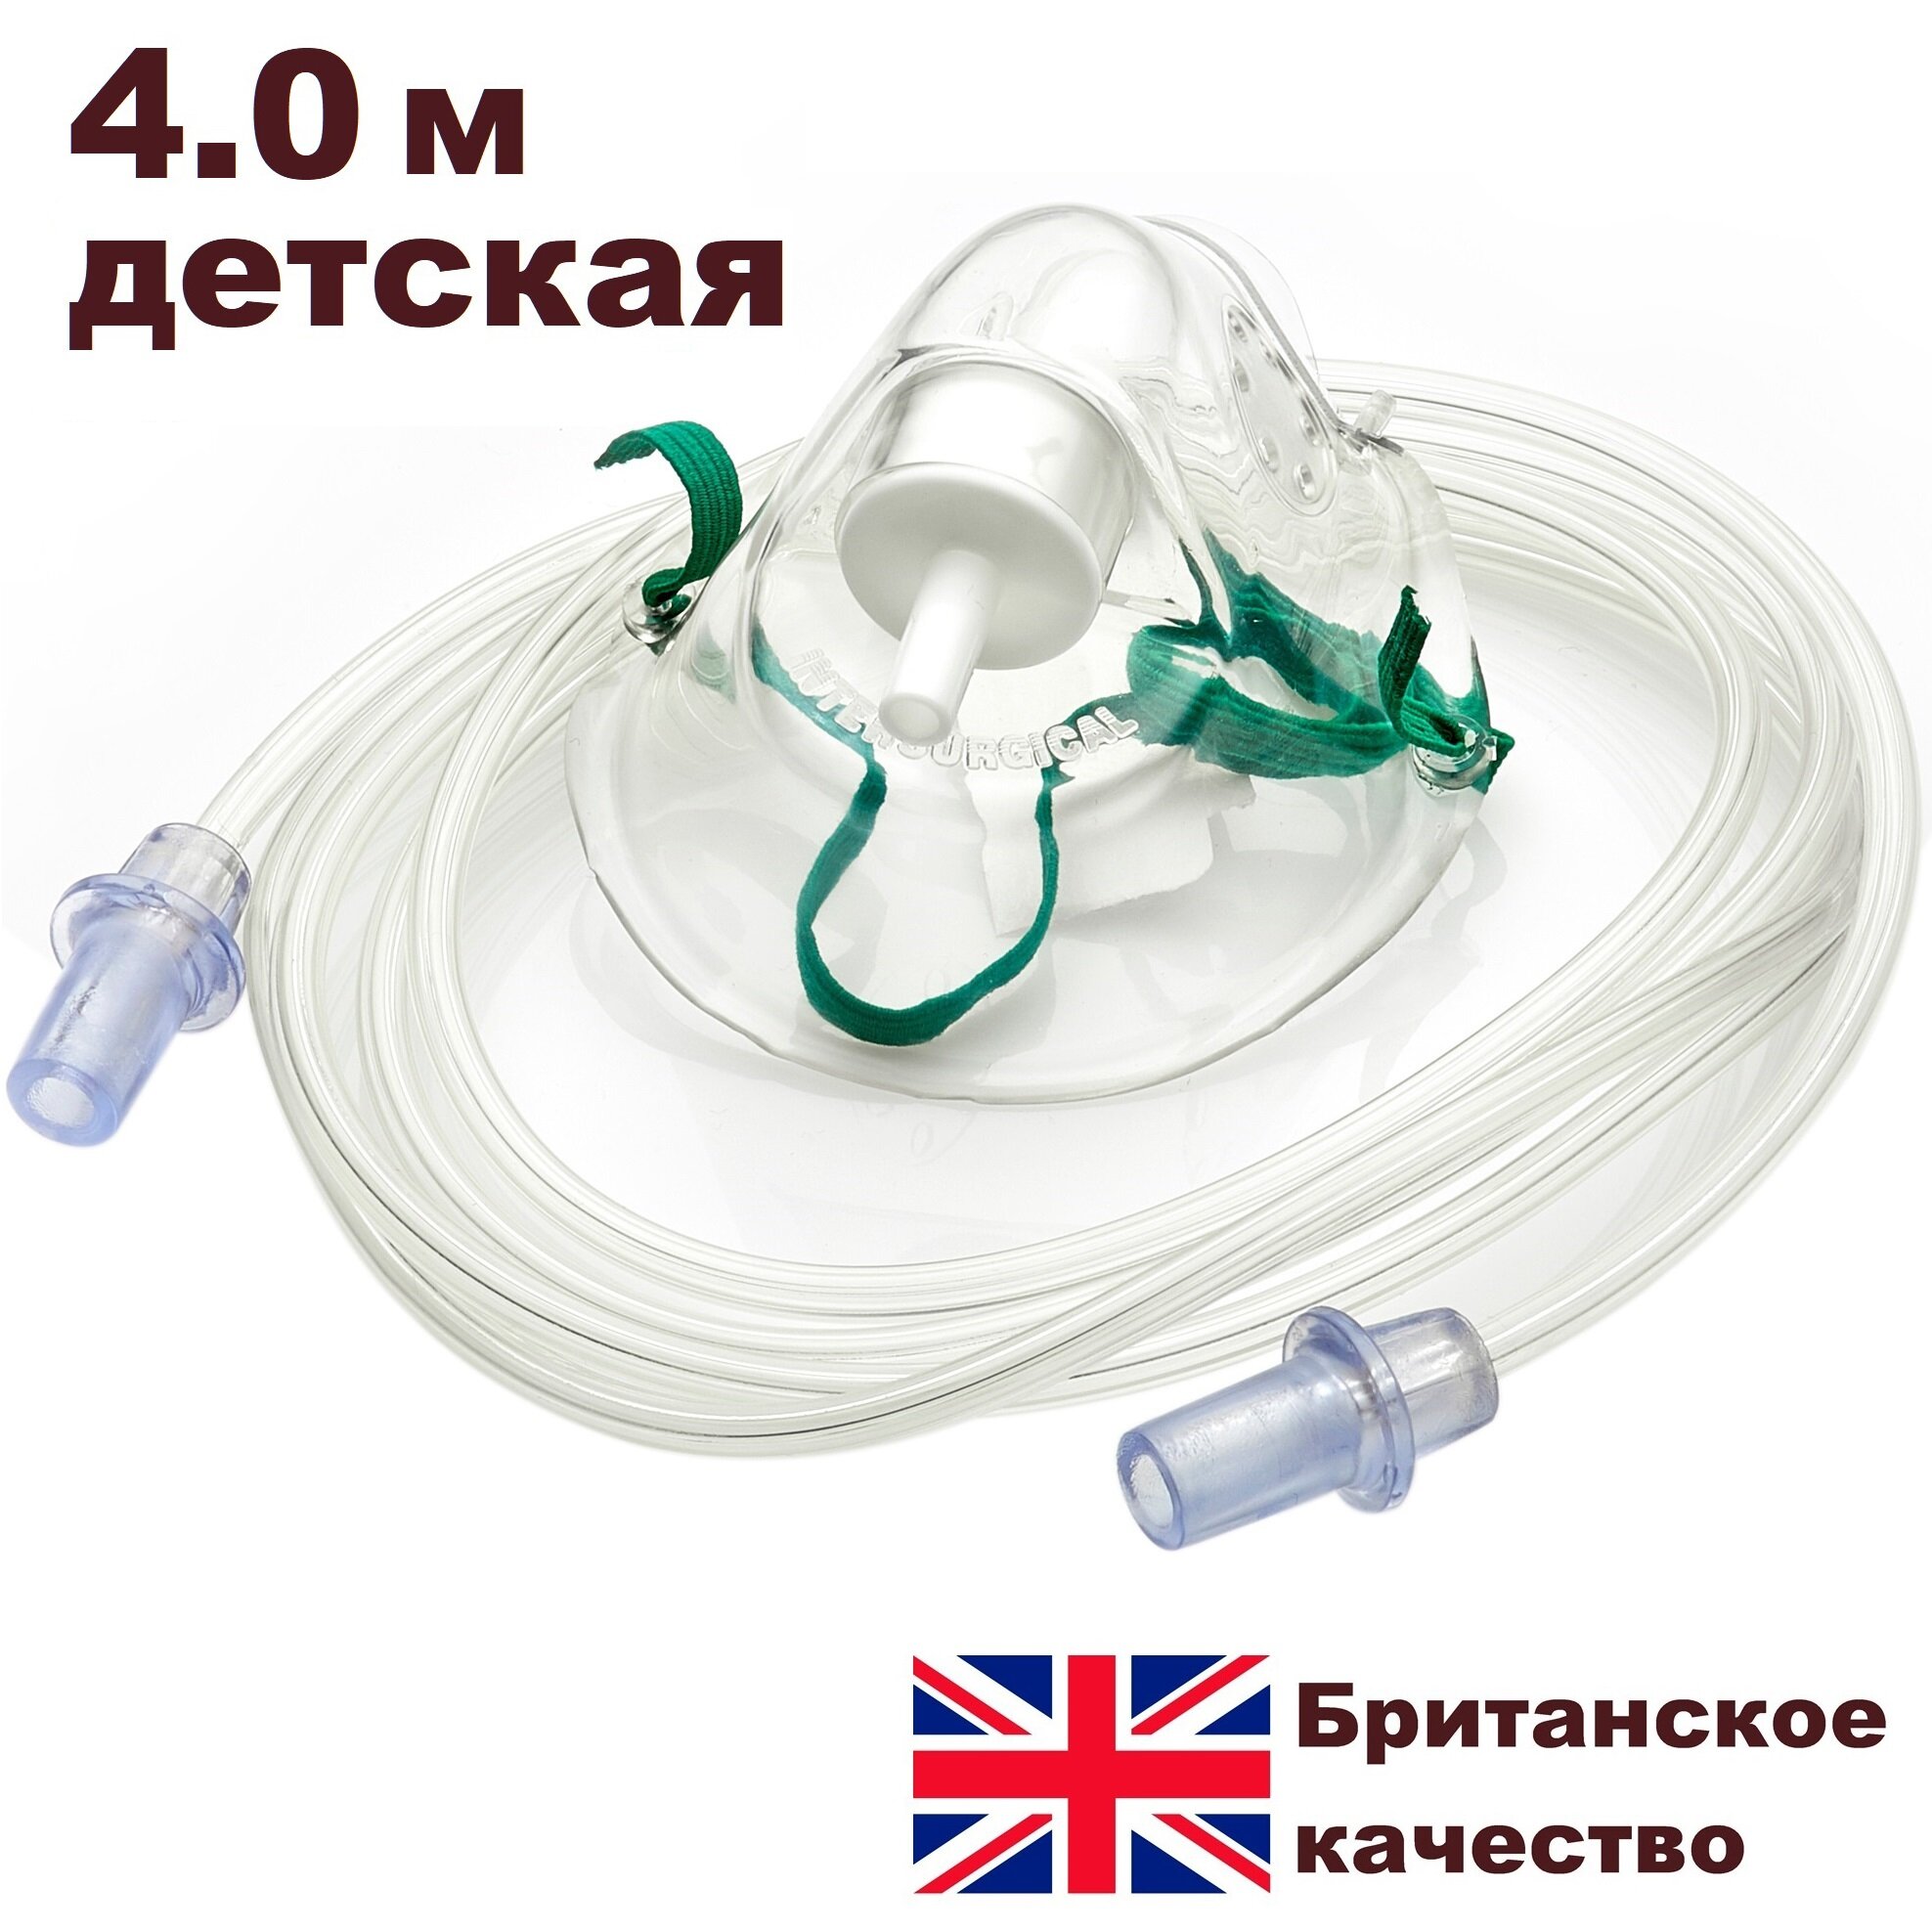 Маска кислородная для детей 4.0 м Intersurgical (Великобритания)